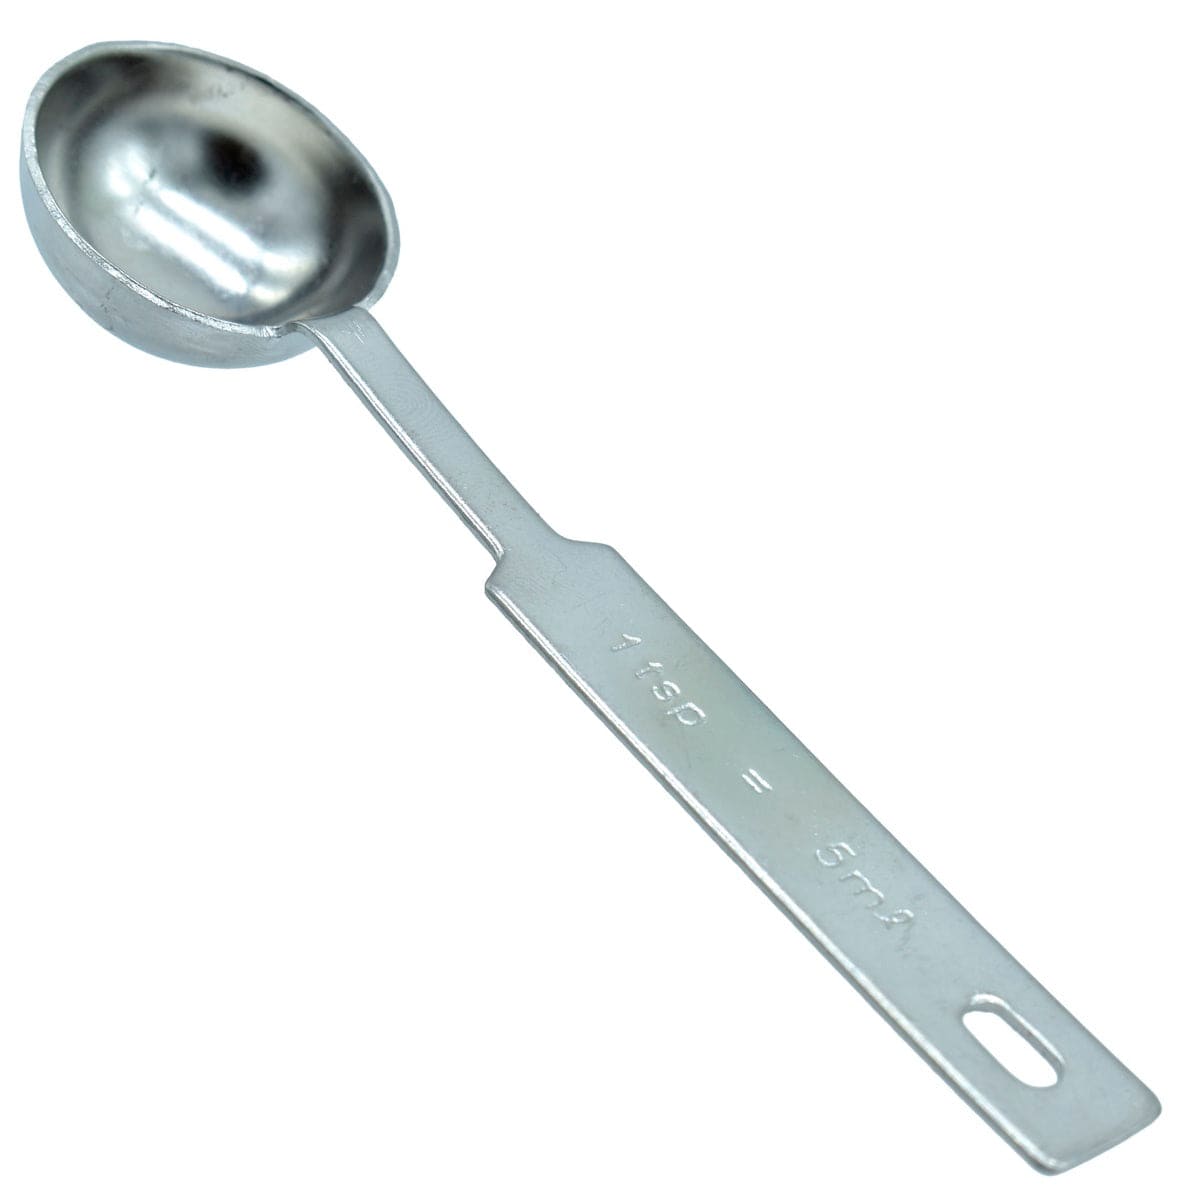 jags-mumbai Wax Stamp & Sealing Measuring Spoon for Sealing Wax